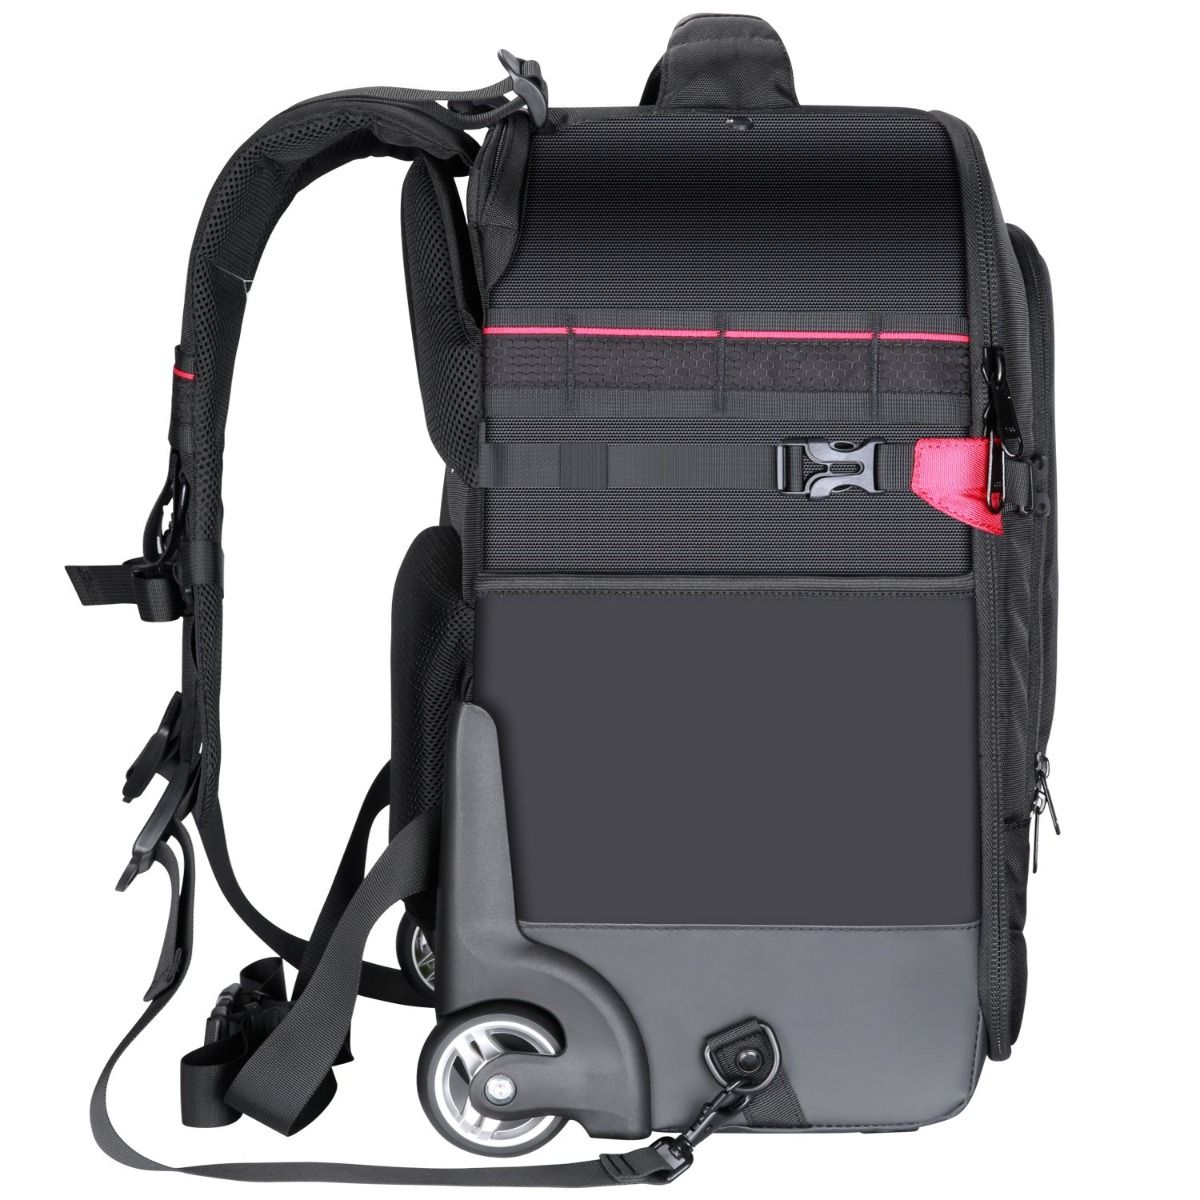 Neewer 2-in-1 Rolling Camera Backpack Trolley Camera tek